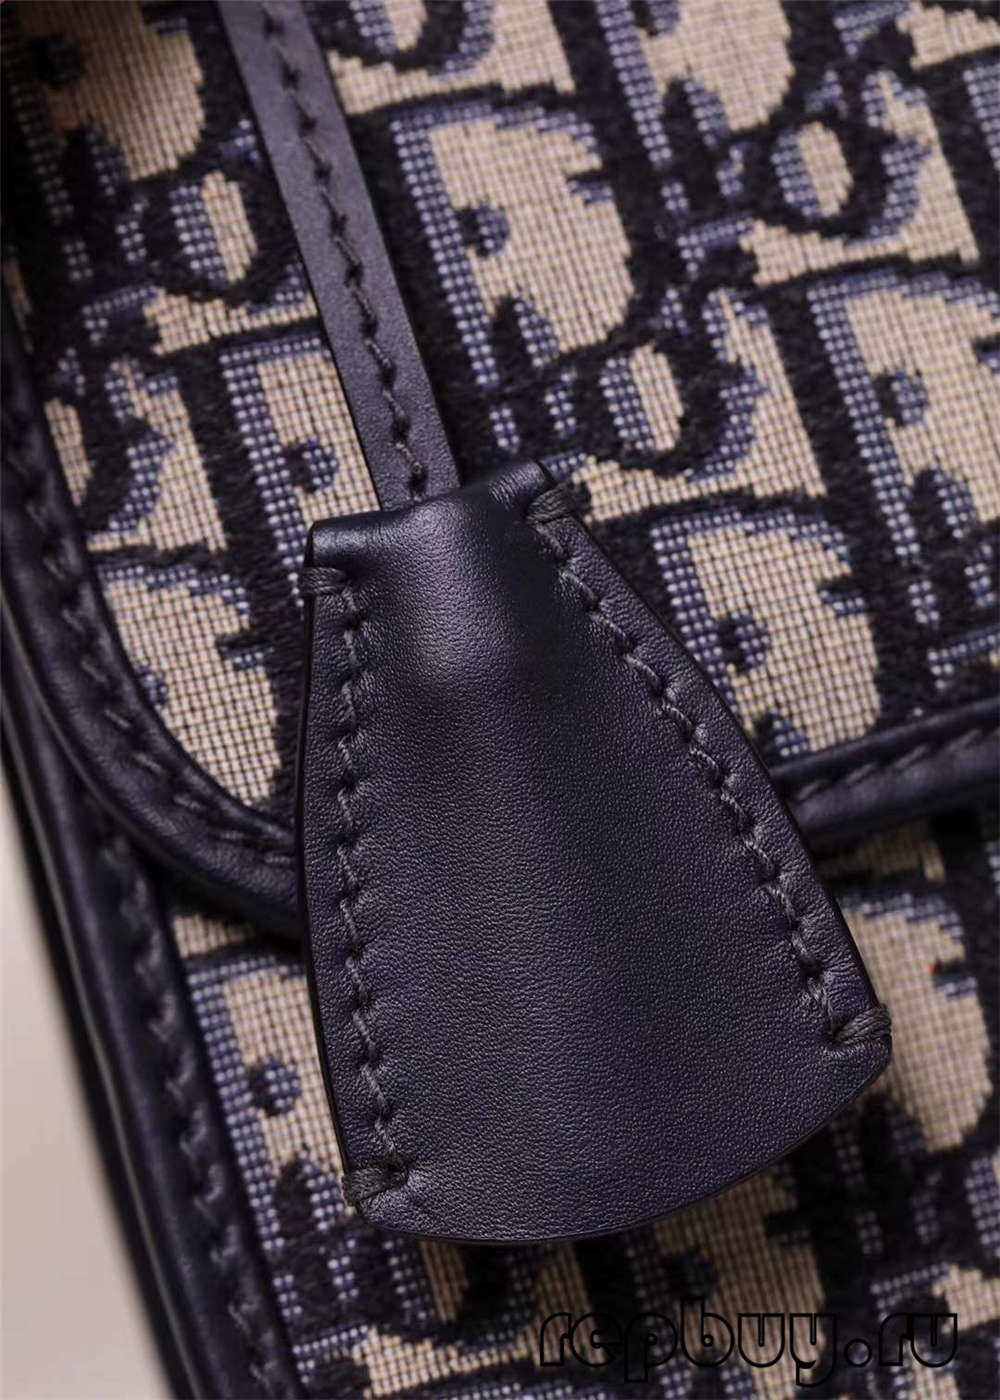 Dior addict bag top replica bags 24cm five gold details (2022 Edition)-Best Quality Fake designer Bag Review, Replica designer bag ru